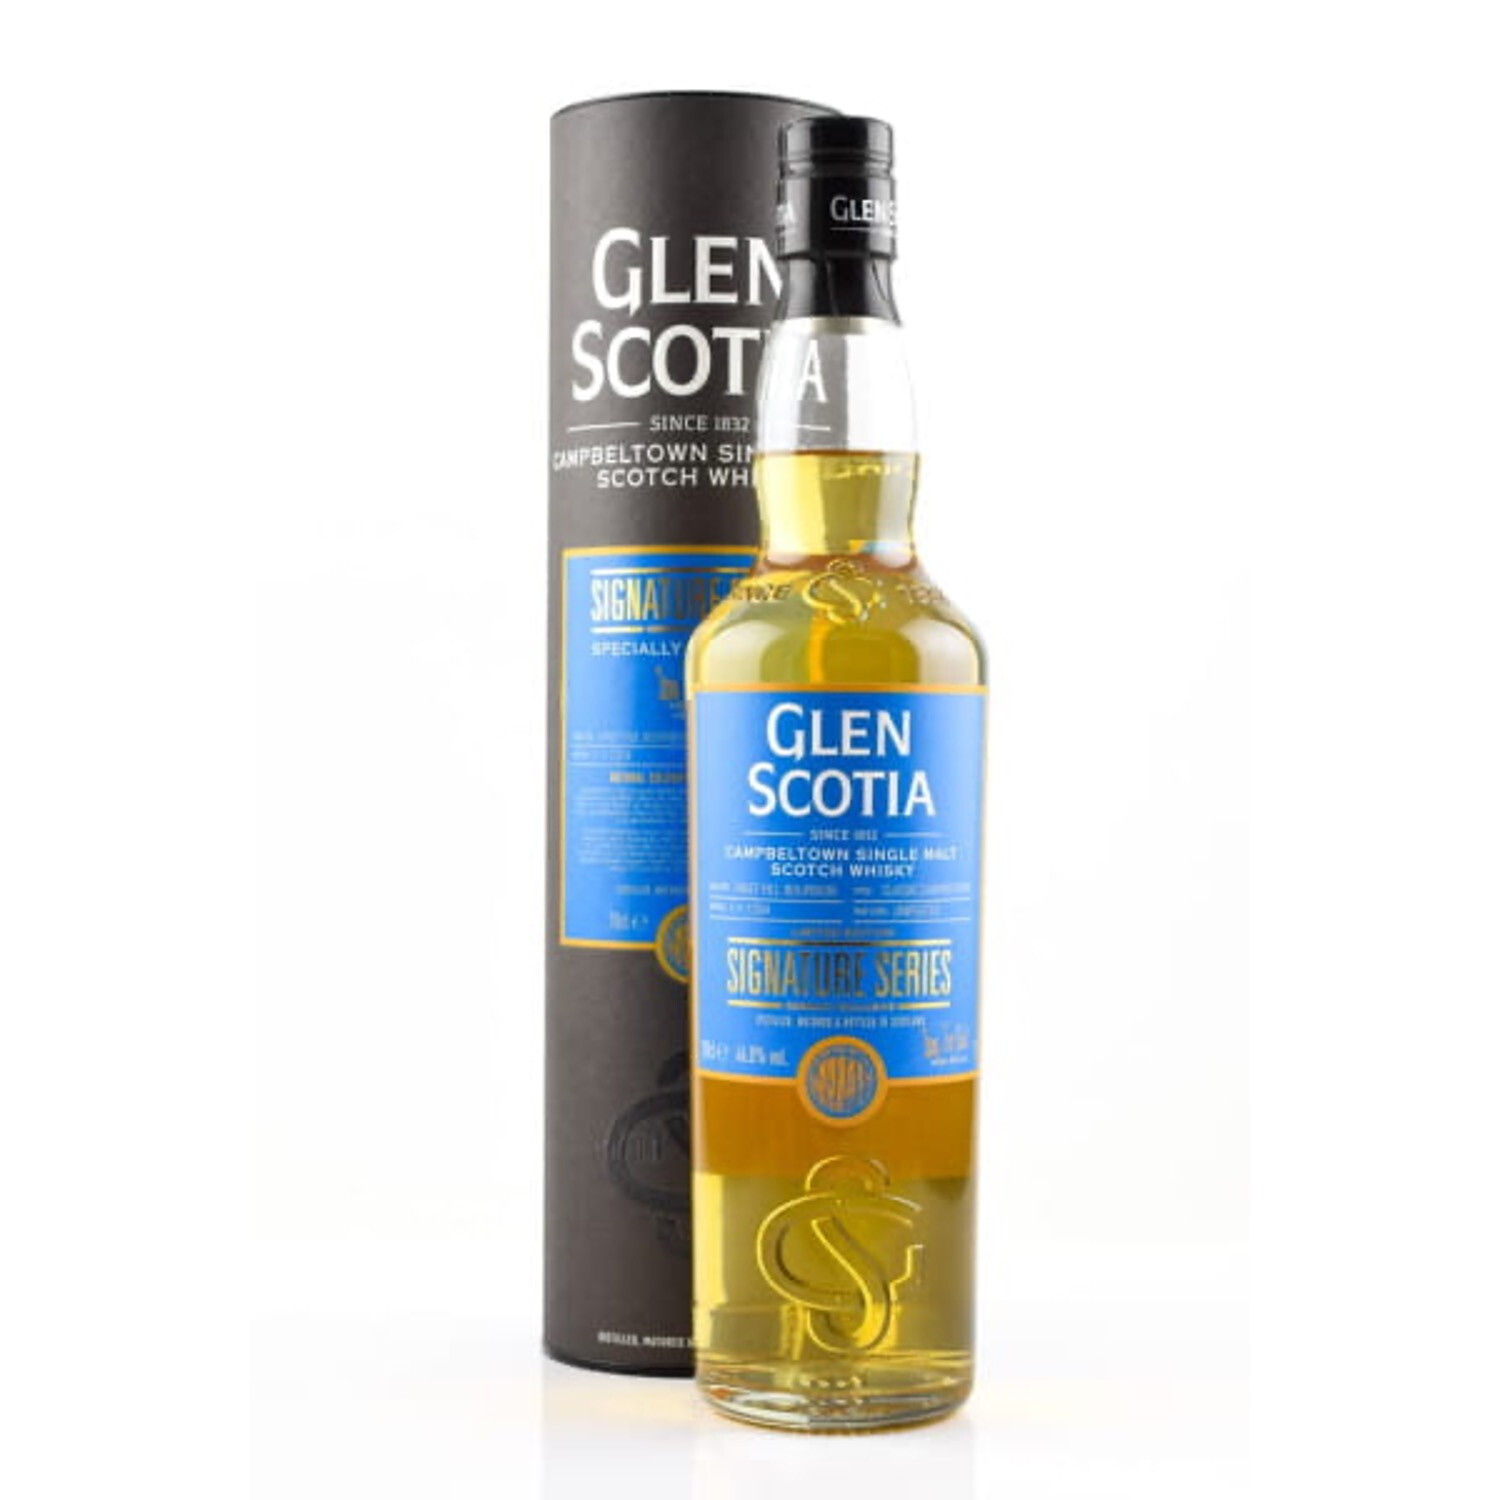 Glen Scotia - Signature Series - First Fill Bourbon Cask